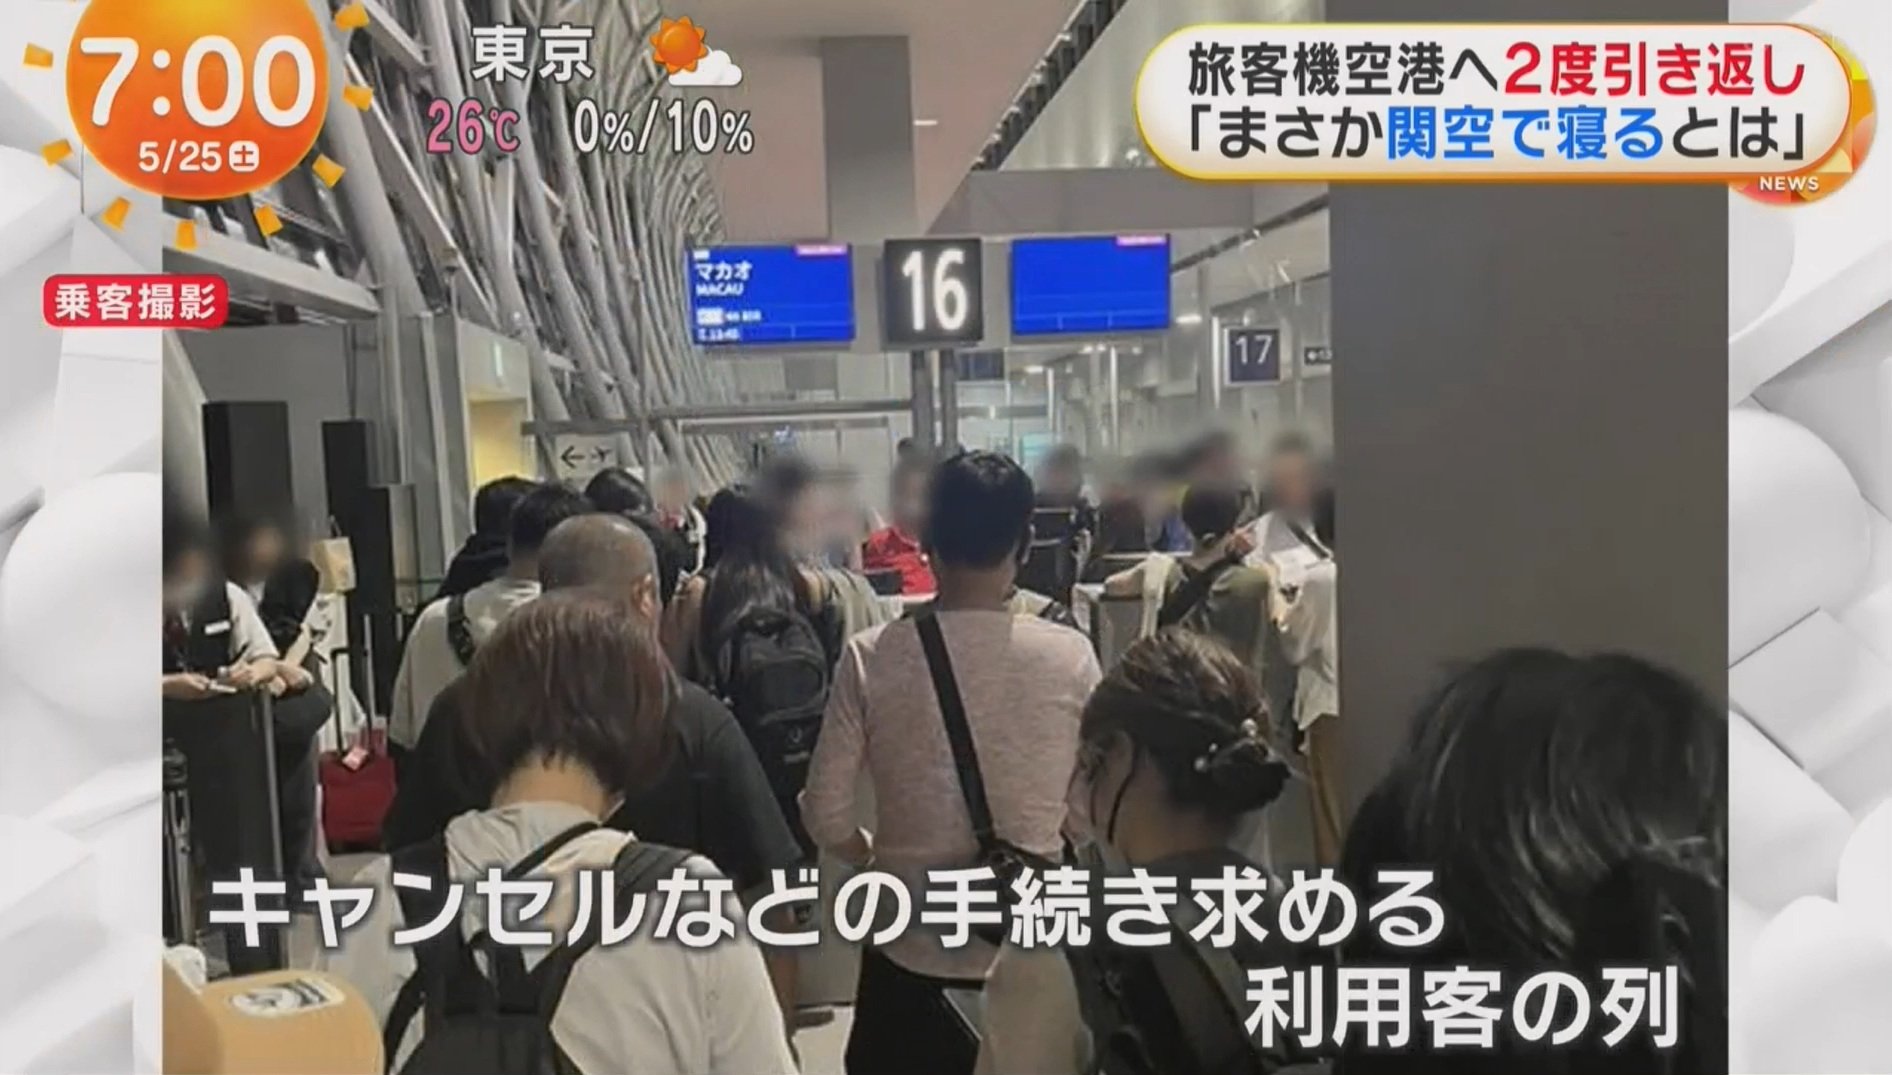 350 ผู้โดยสารระทึก เครื่องบินล้อไม่เก็บ บินวนกลับสนามบินญี่ปุ่น 2 รอบ 